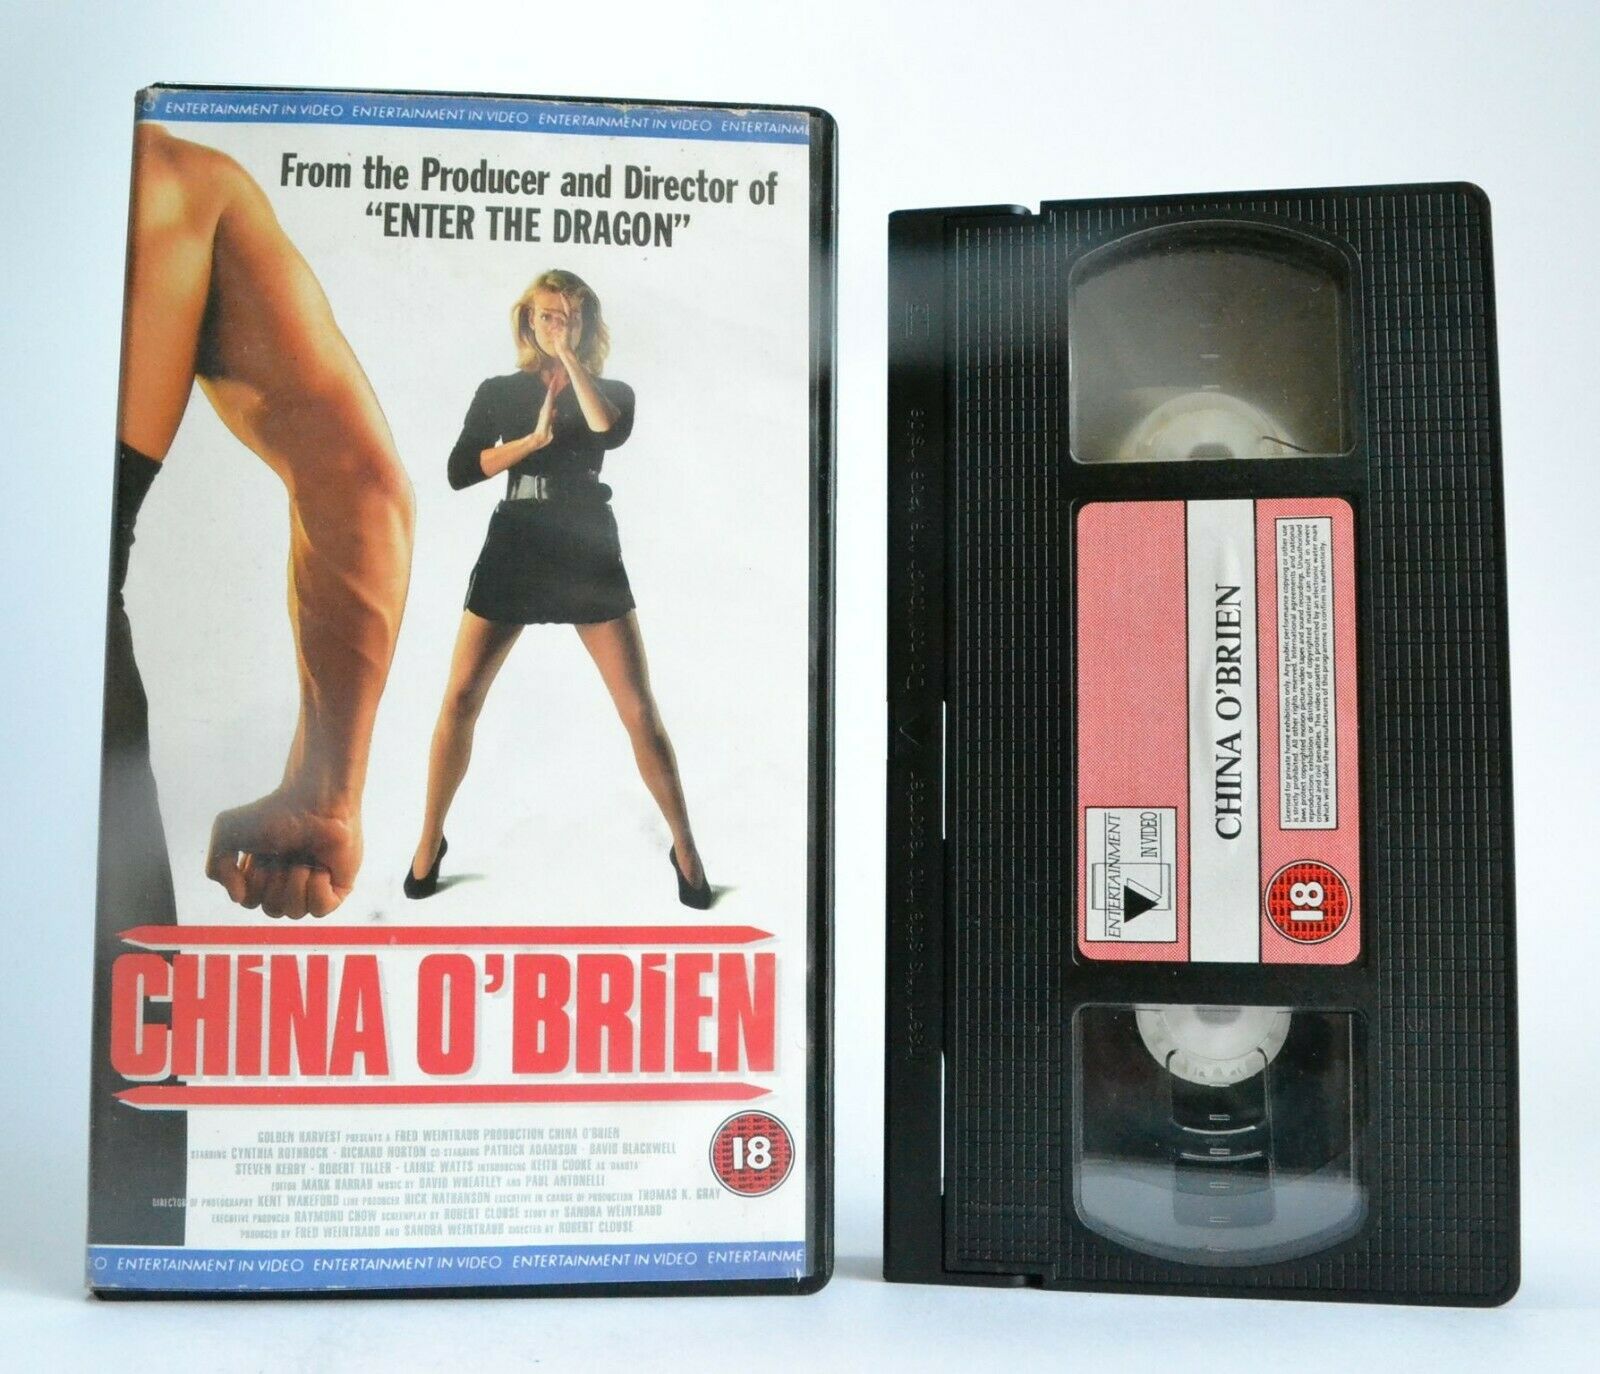 China O'Brien: Martial Action - Cynthia Rothrock / Richard Norton (1988) - Pal VHS-